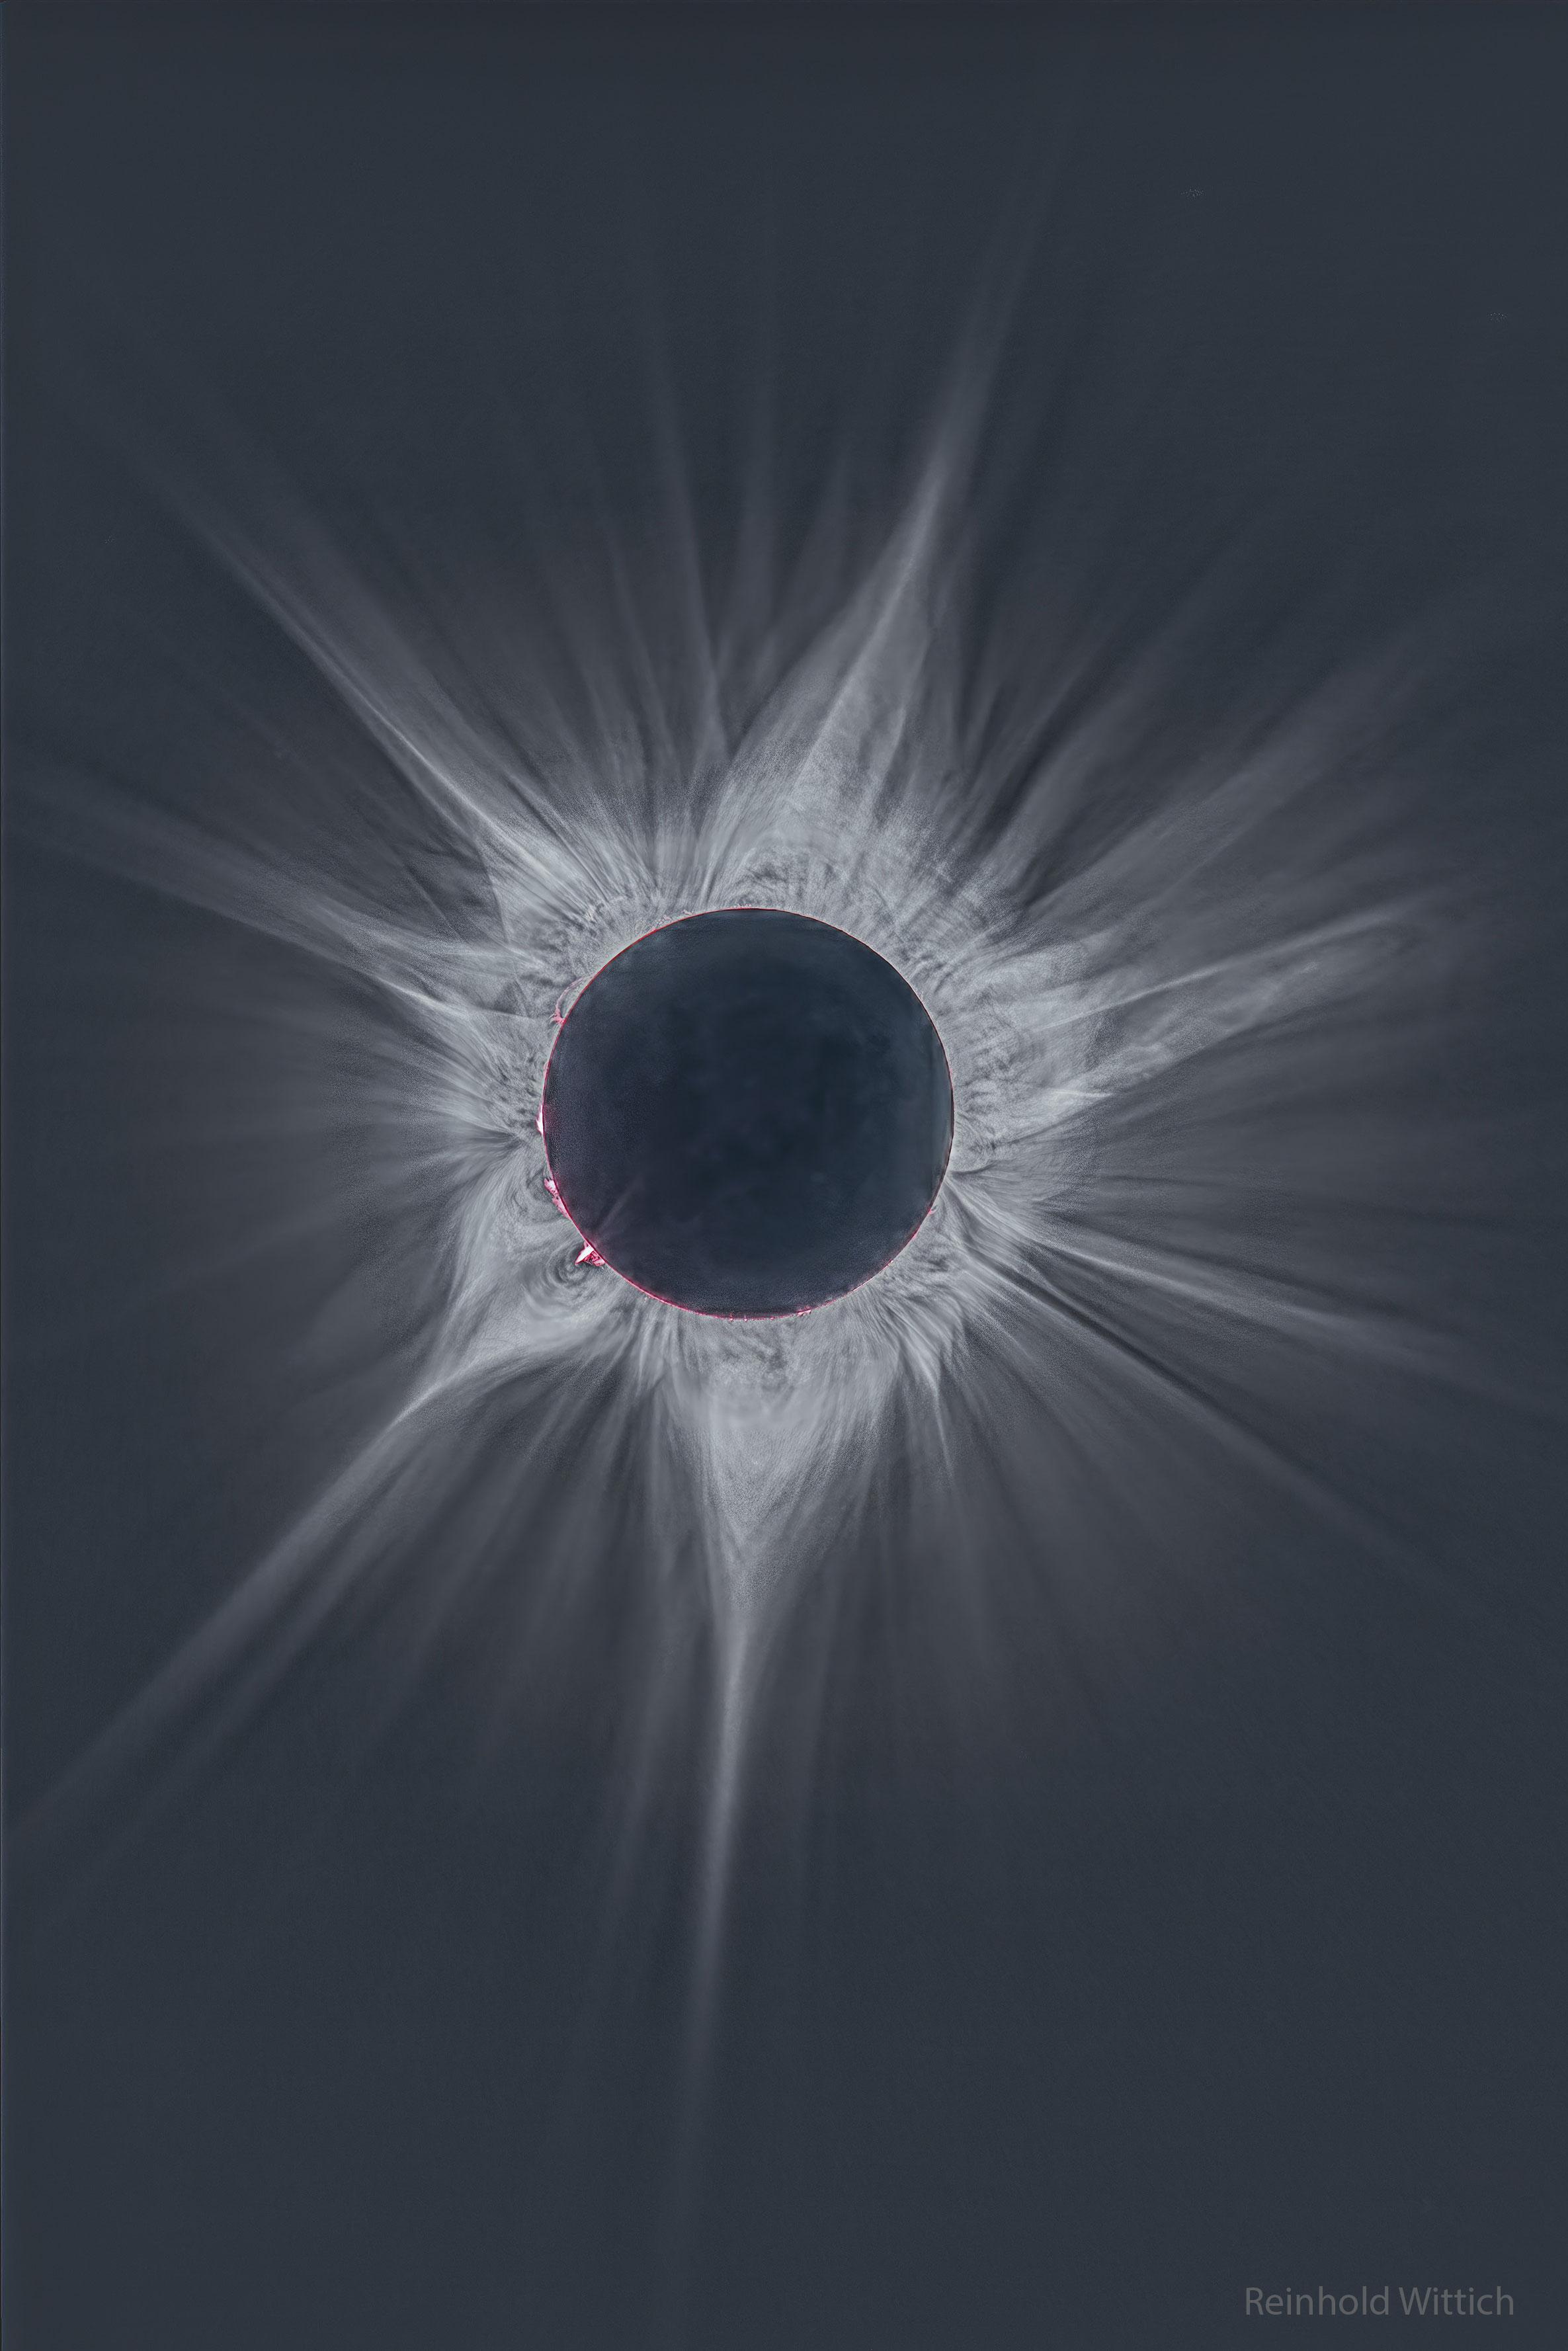 صورة عميقة للإكليل المحيط بالشمس خلال كسوف نيسان 2023 الكلّي. القرص المركزي مظلم بينما نرى العديد من الأشعّة الساطعة والمعقّدة تمتدّ باتّجاه الخارج. تمكن رؤية بعض الخيوط الورديّة الحارّة حول حافّة الشمس مباشرة.